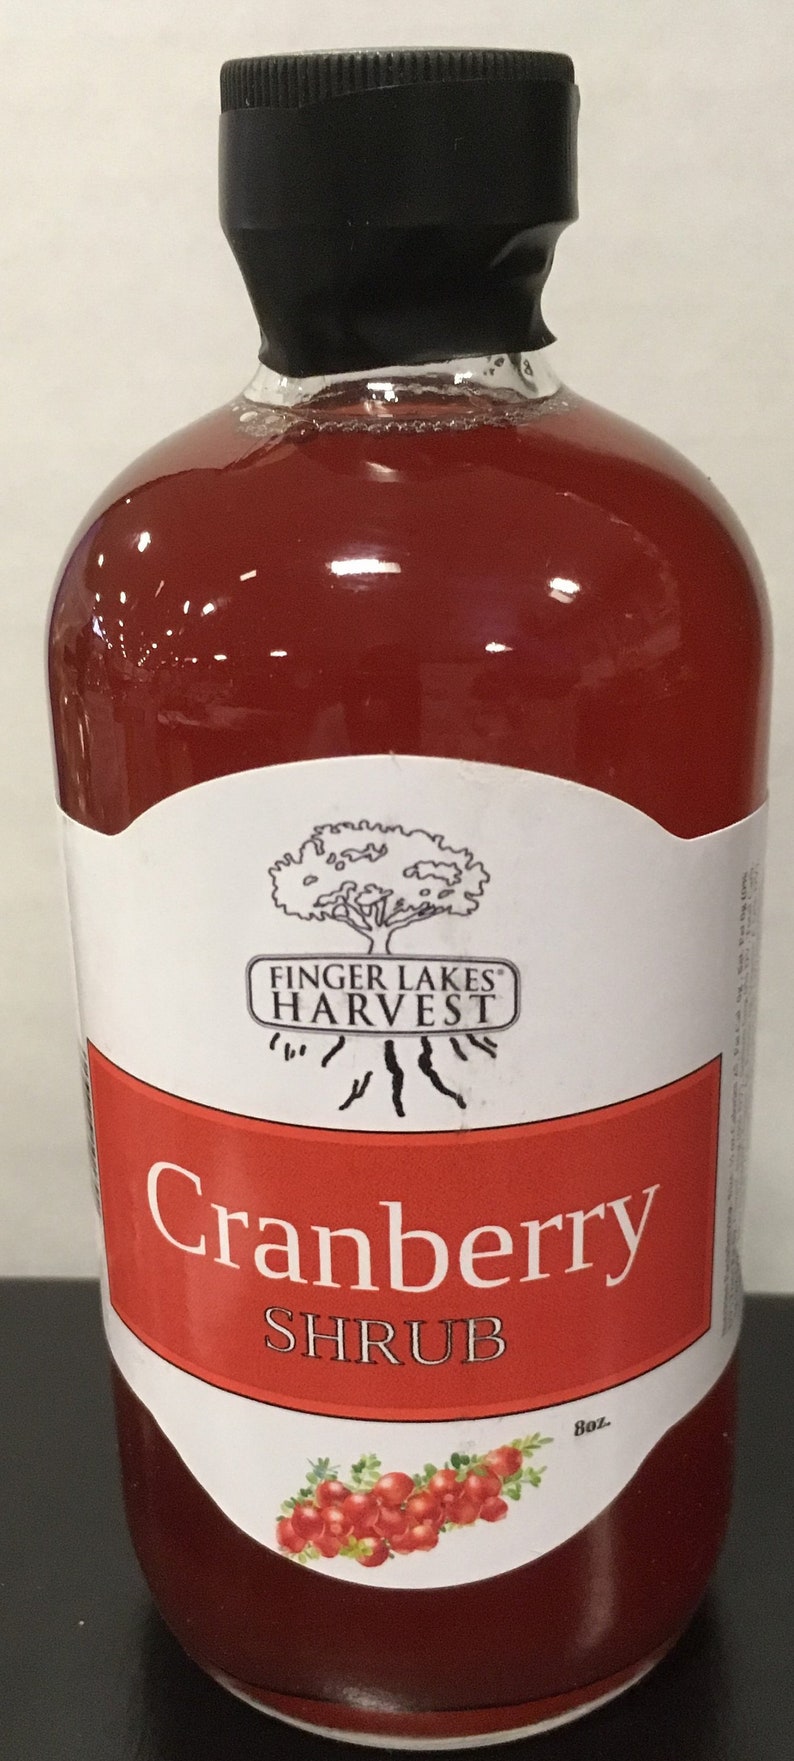 Cranberry Shrub image 2